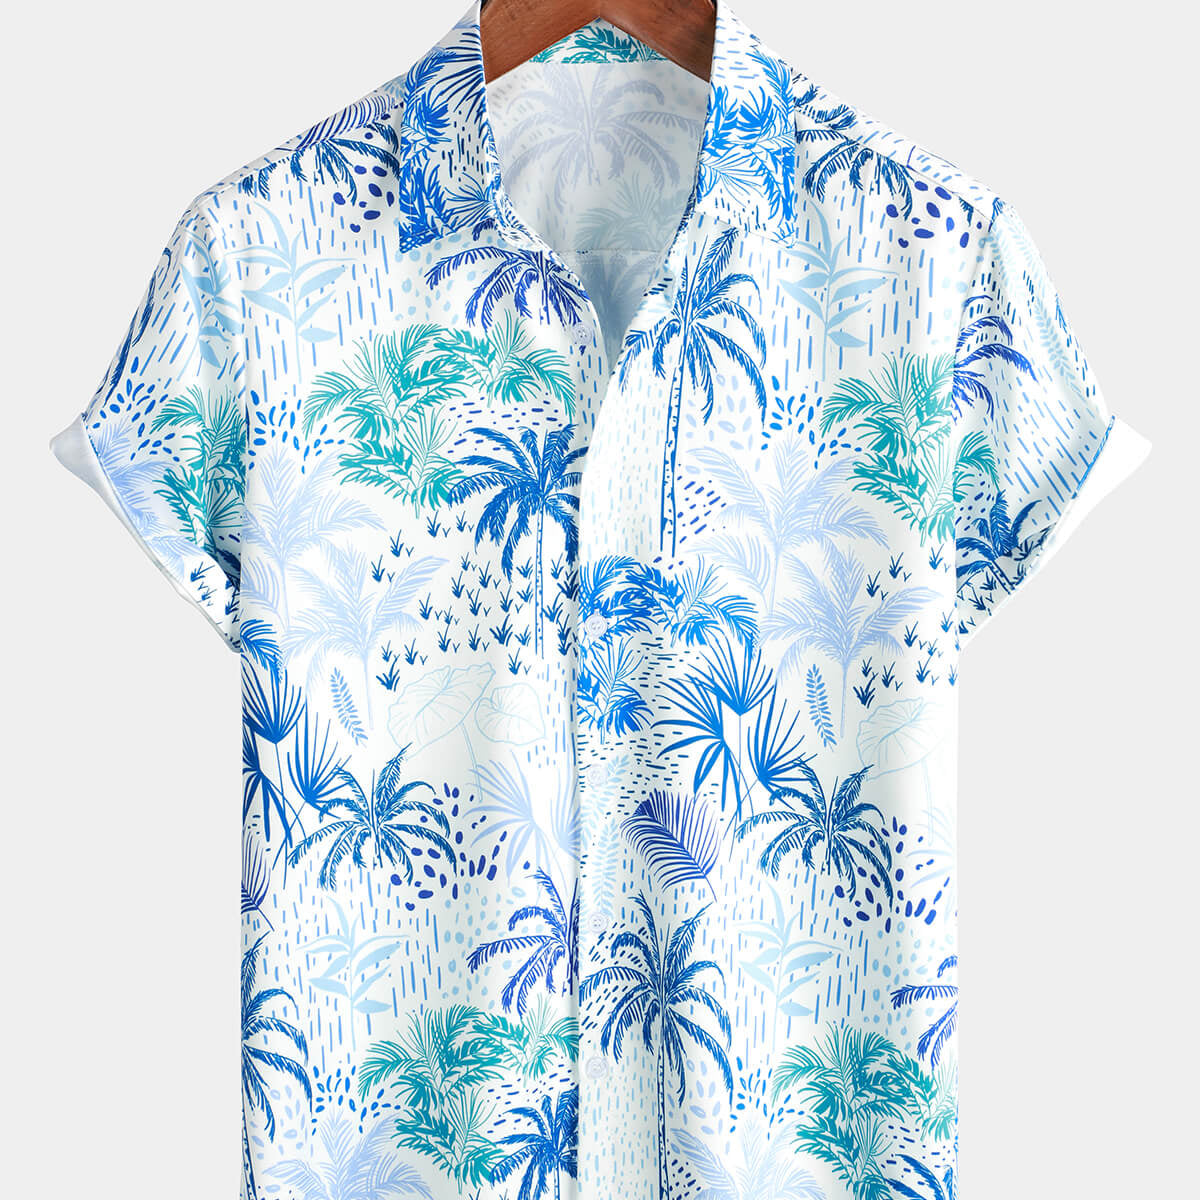 Camisa hawaiana azul de verano de manga corta floral con botones y isla tropical de palmera para hombre